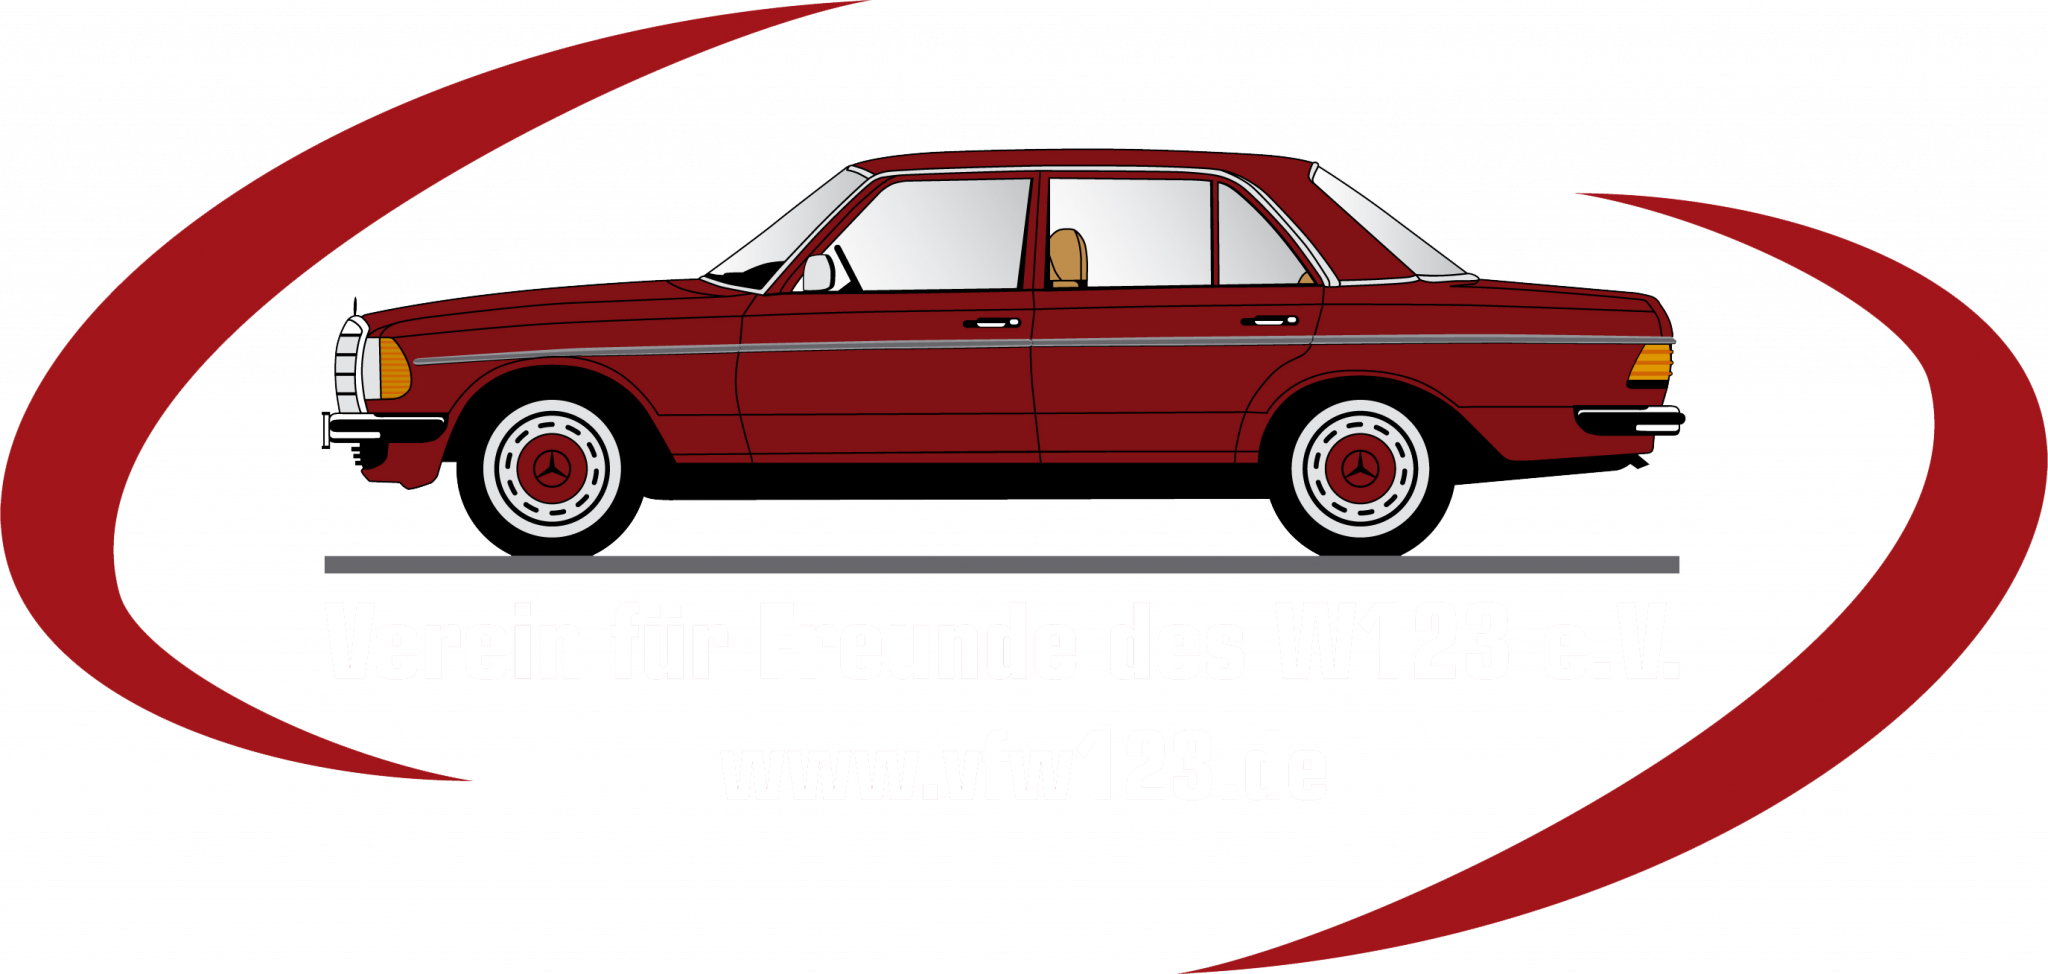 VfW123.de